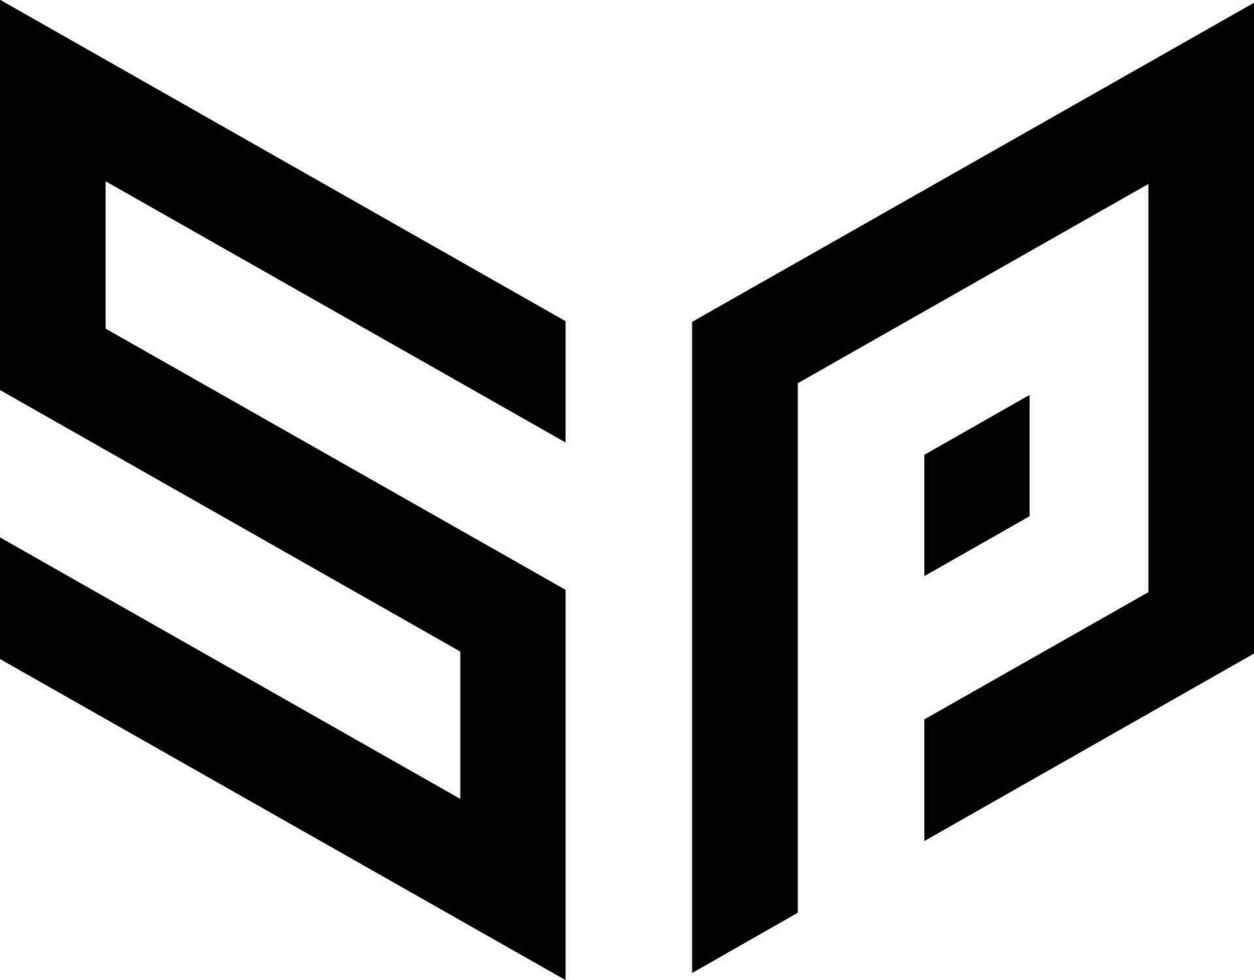 SP logo icon vector